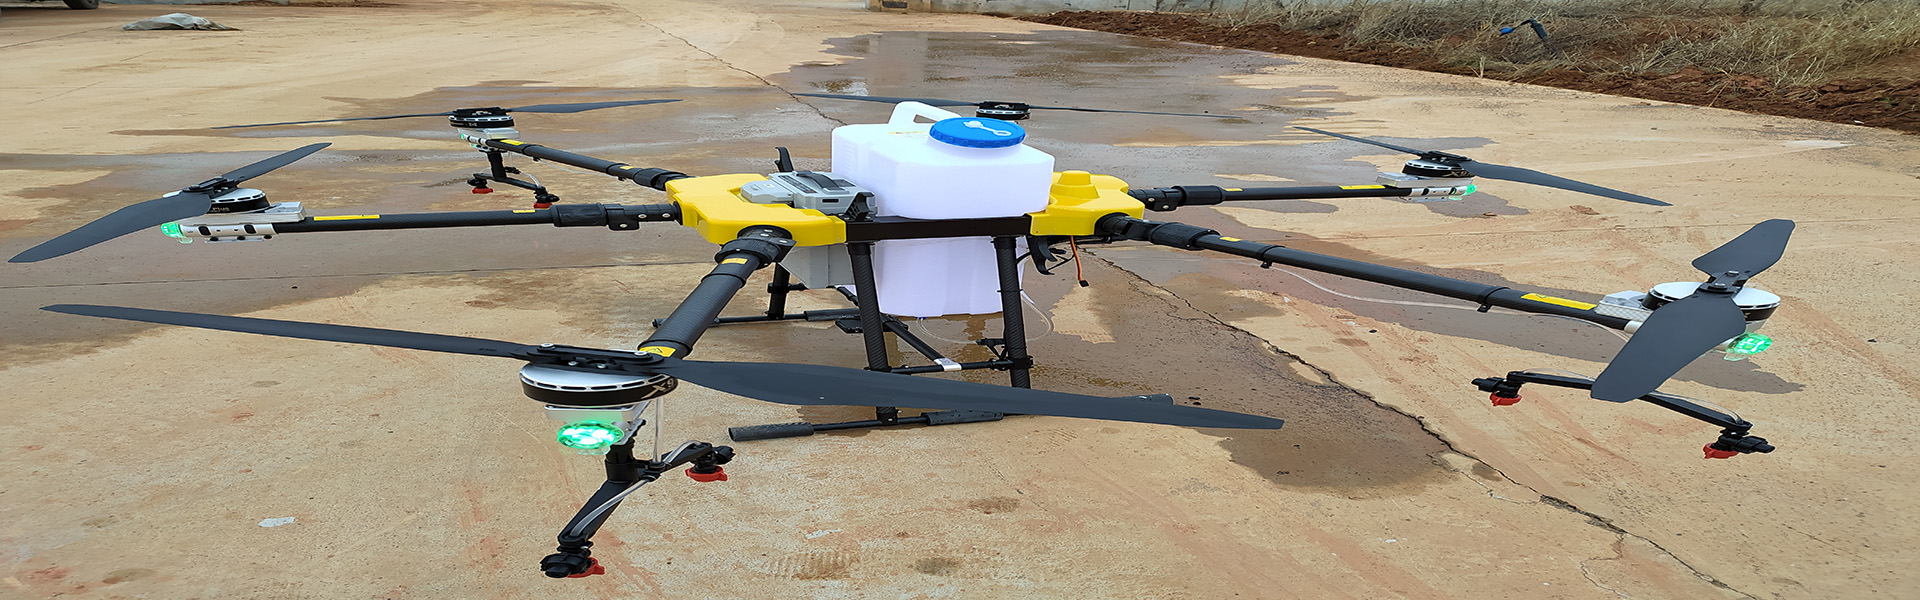 農業UAV、植物保護UAV、農業UAVアクセサリー,Shenzhen fnyuav technology co.LTD